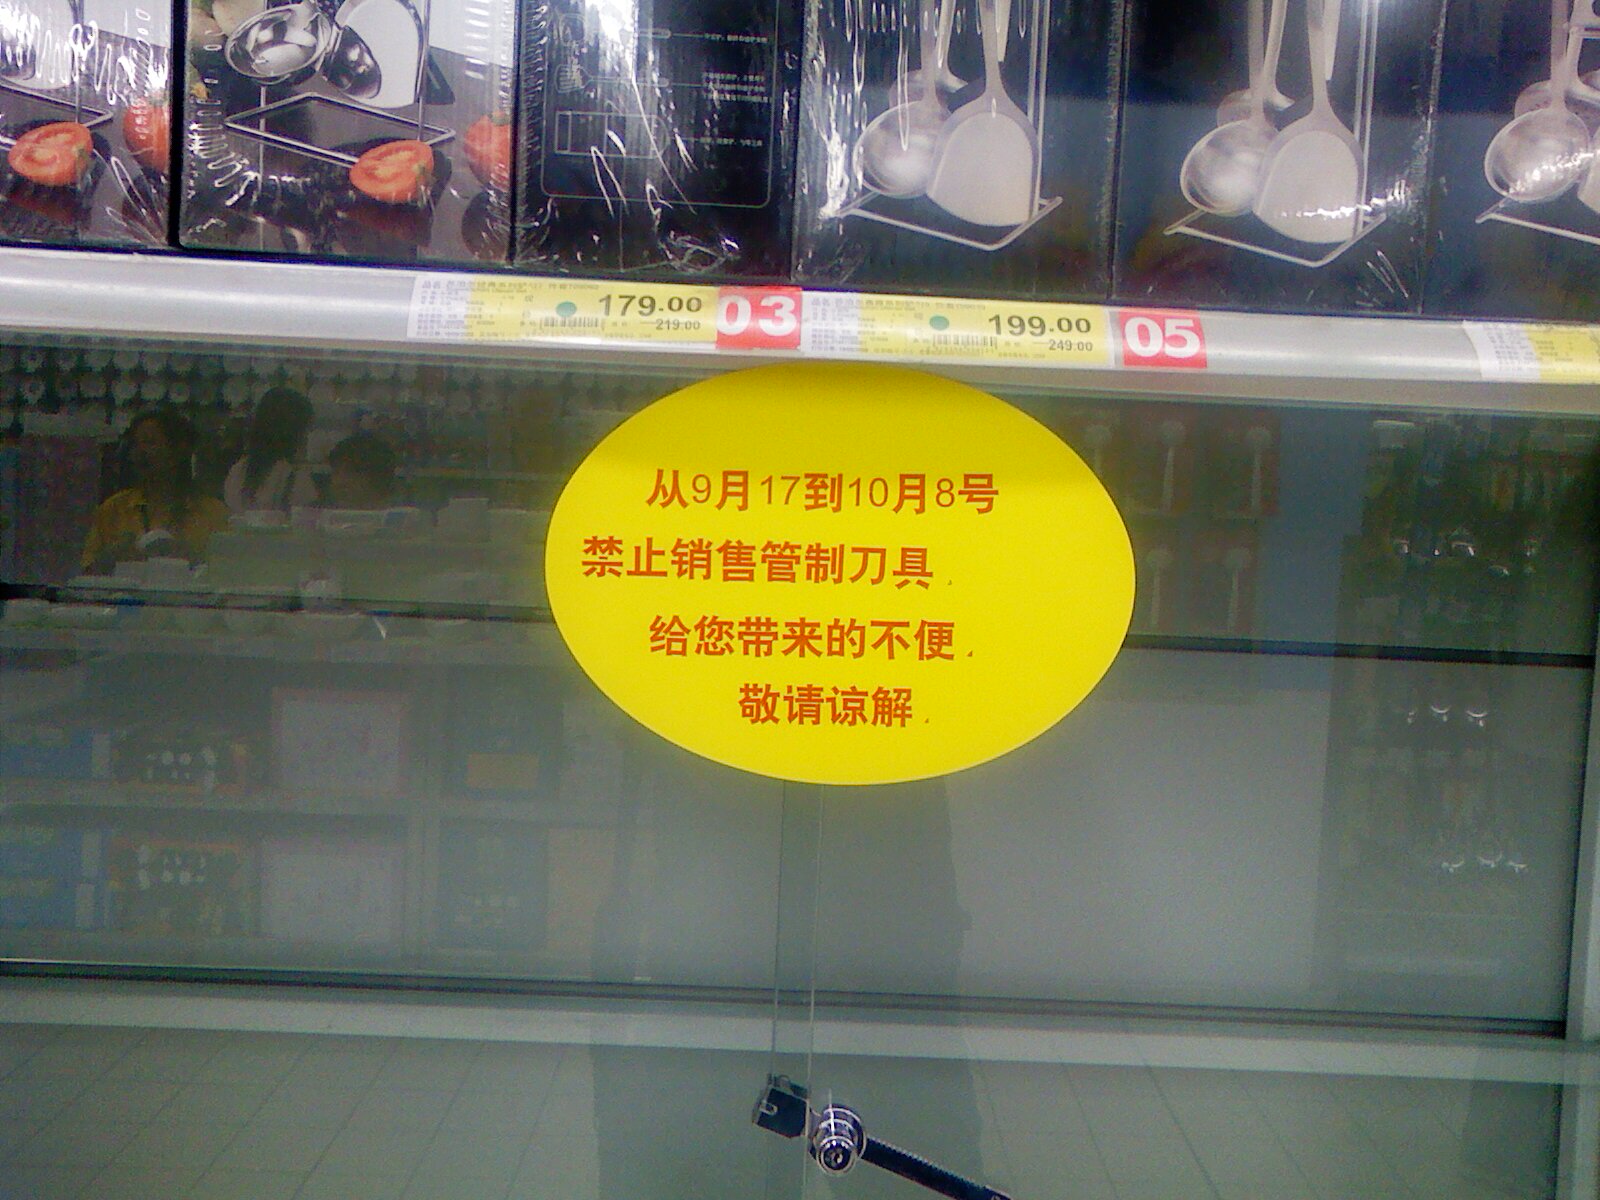 因為「十一國慶」，當局禁止北京的商店賣廚房刀具。